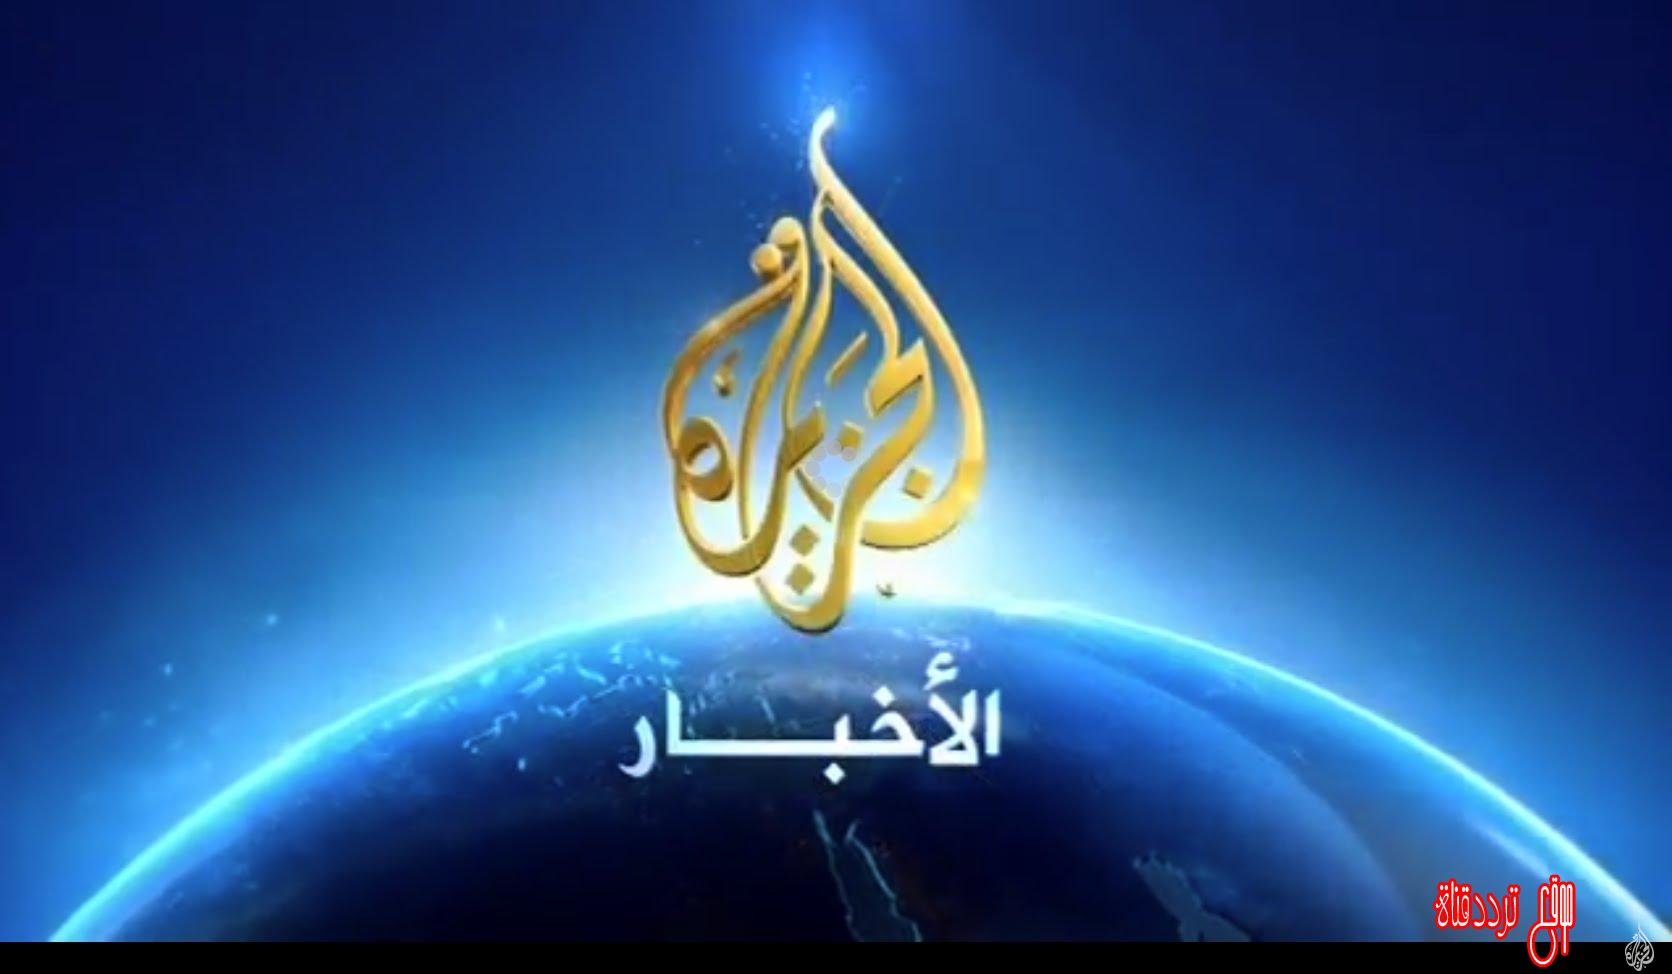 تردد قناة الجزيرة الاخبارية اتش دى Al Jazeera HD على النايل سات 2017